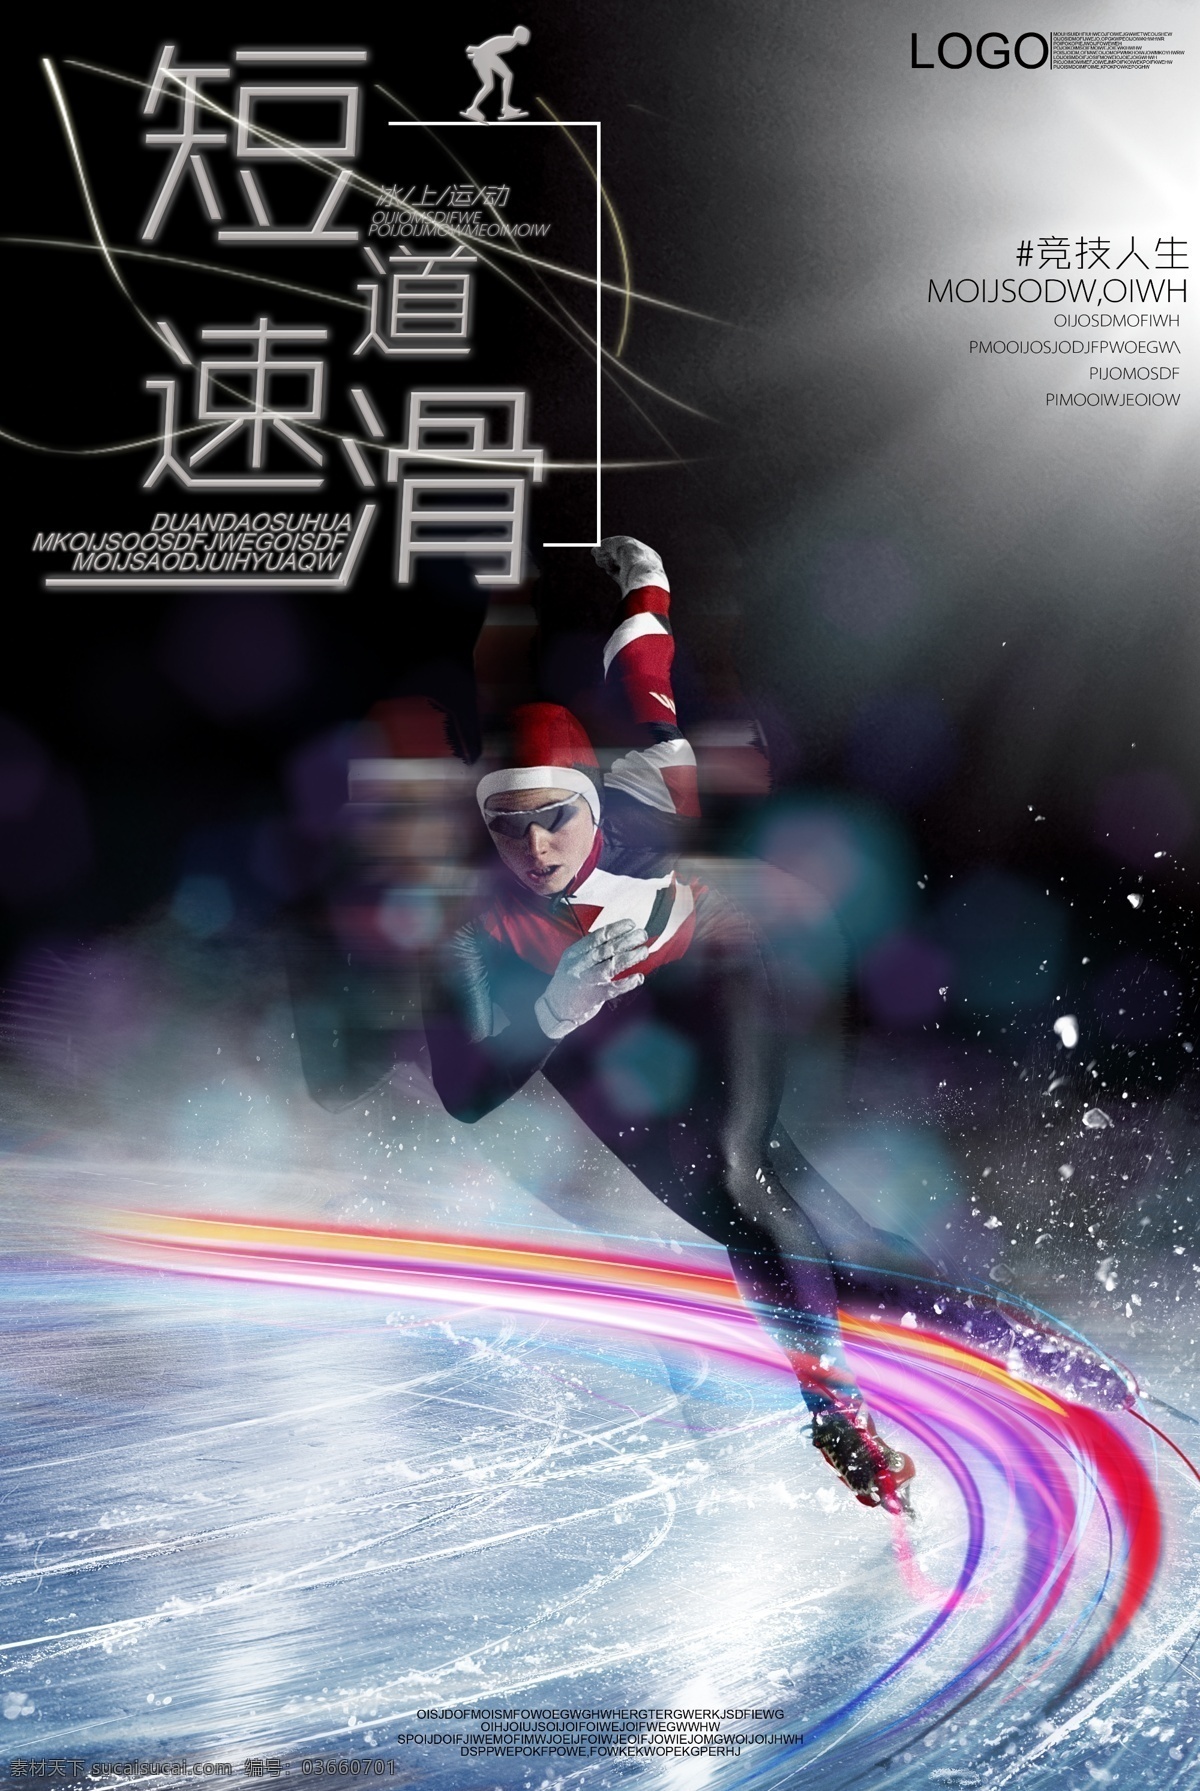 炫彩 短道 速滑 体育 海报 海报模板 体育海报设计 体育运动 风格 绚丽 模板 流光素材海报 冬季